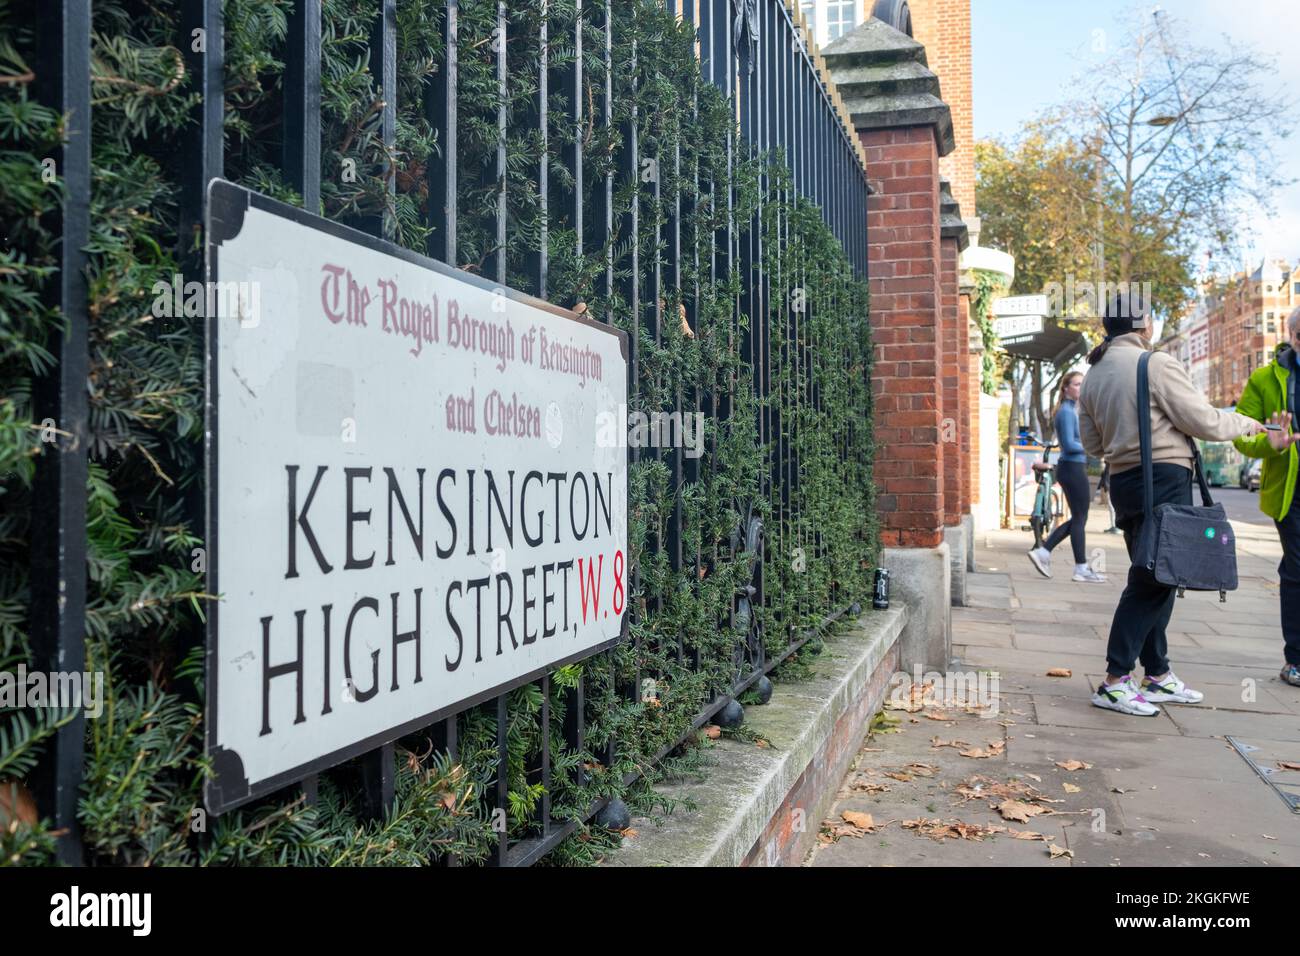 London - November 2022: Kensington High Street W8 Straßenschild, eine gehobene Straße mit Geschäften und Restaurants. Stockfoto